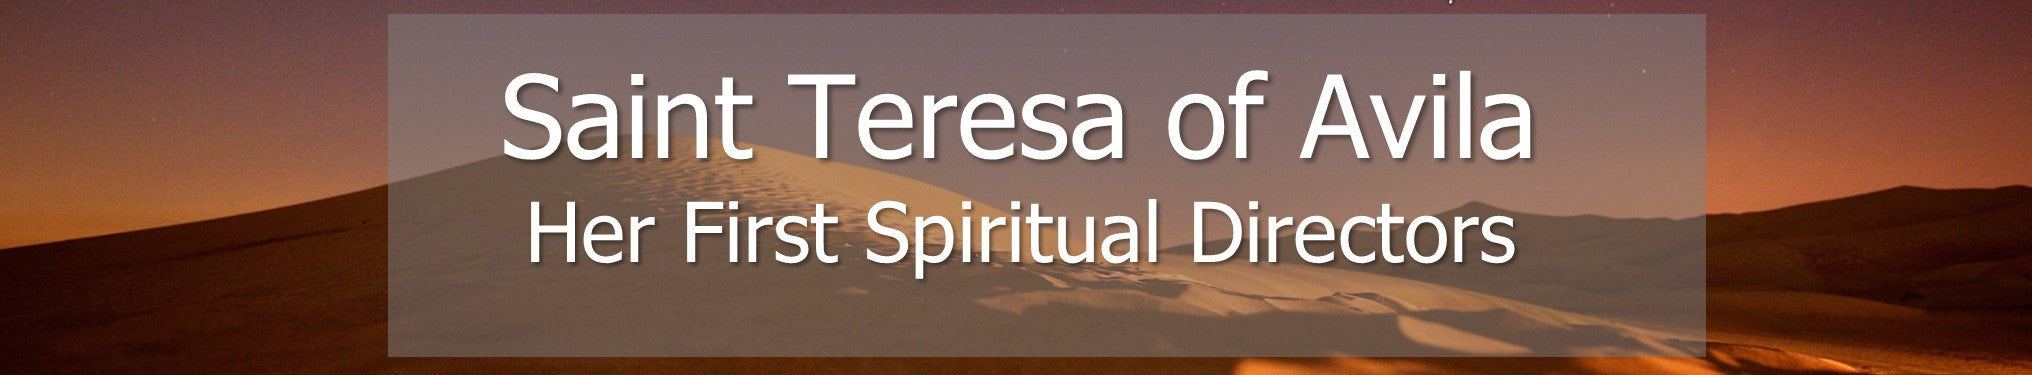 Saint Teresa of Avila - Her First Spiritual Directors